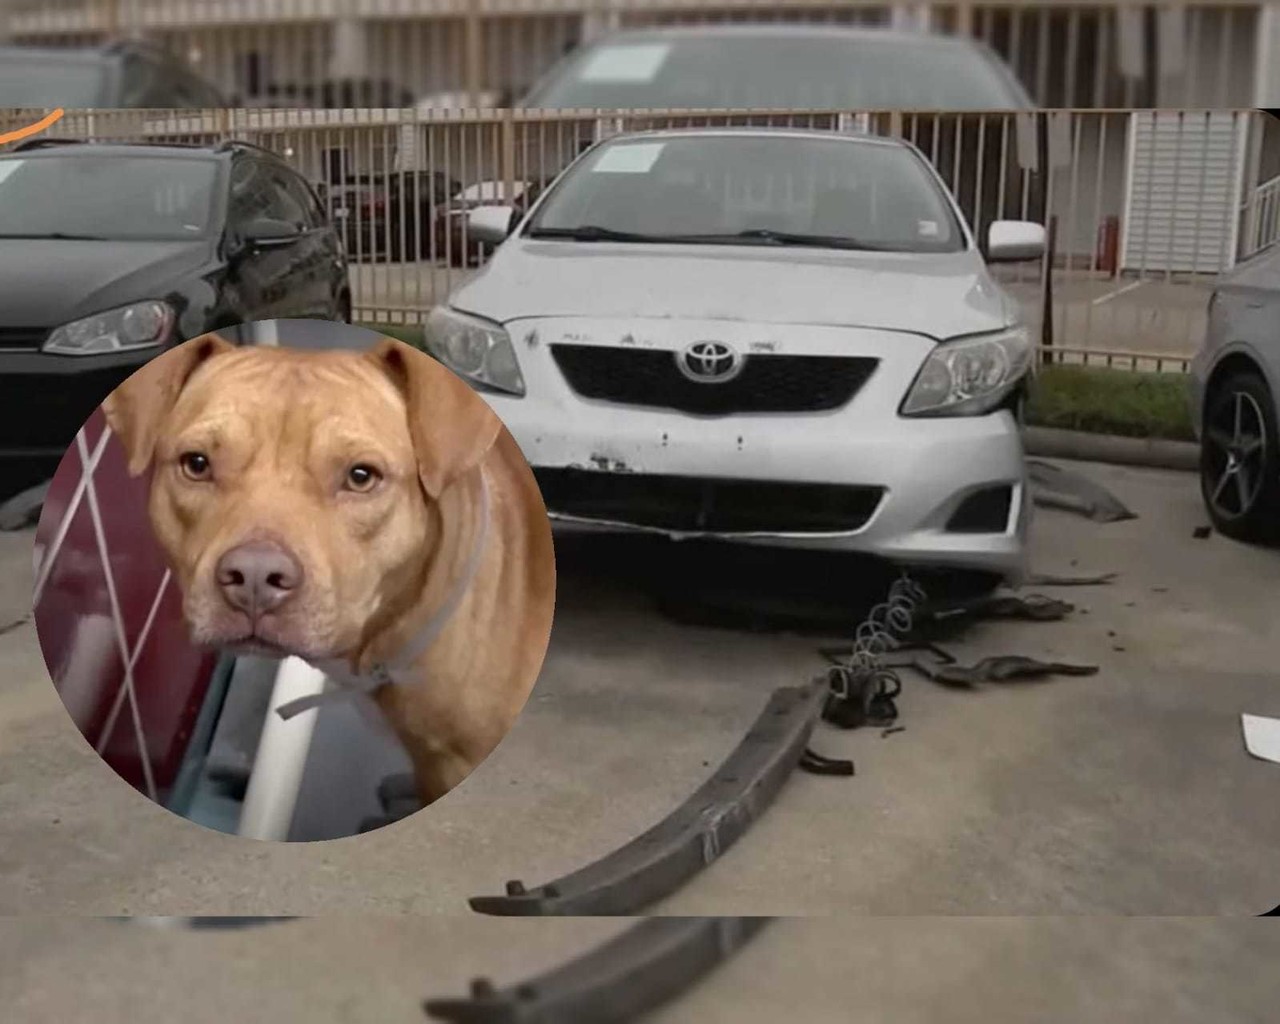 Los perros fueron captados por una cámara de vigilancia mientras rasguñaban la pintura y arrancaban los parachoques de los vehículos en el estacionamiento de G Motors. Foto: Especial.